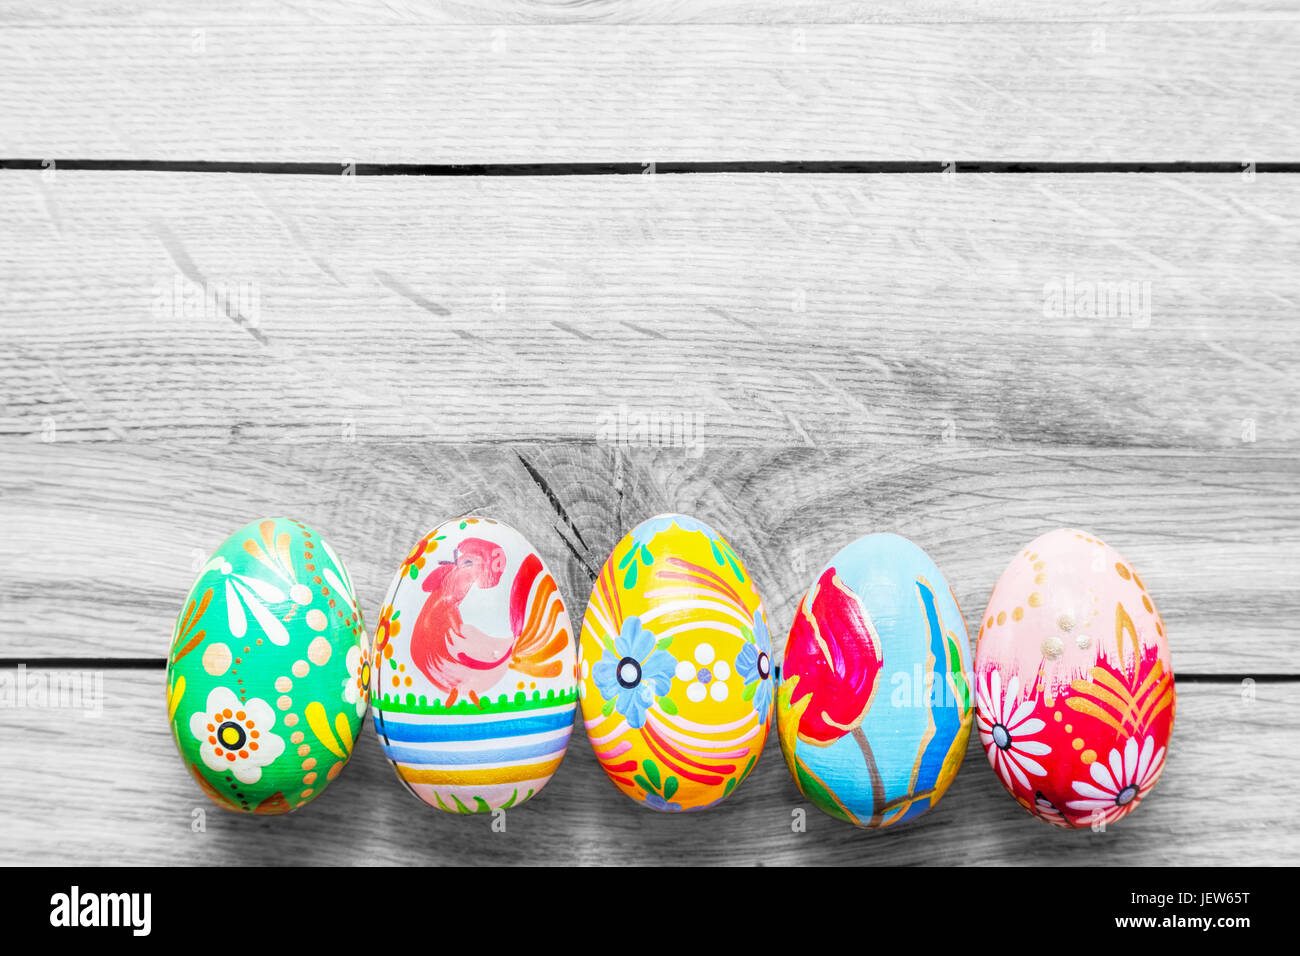 Pasqua uova artigianali dipinte con colori vivaci fantasie floreali collocato su un tavolo di legno. Foto Stock